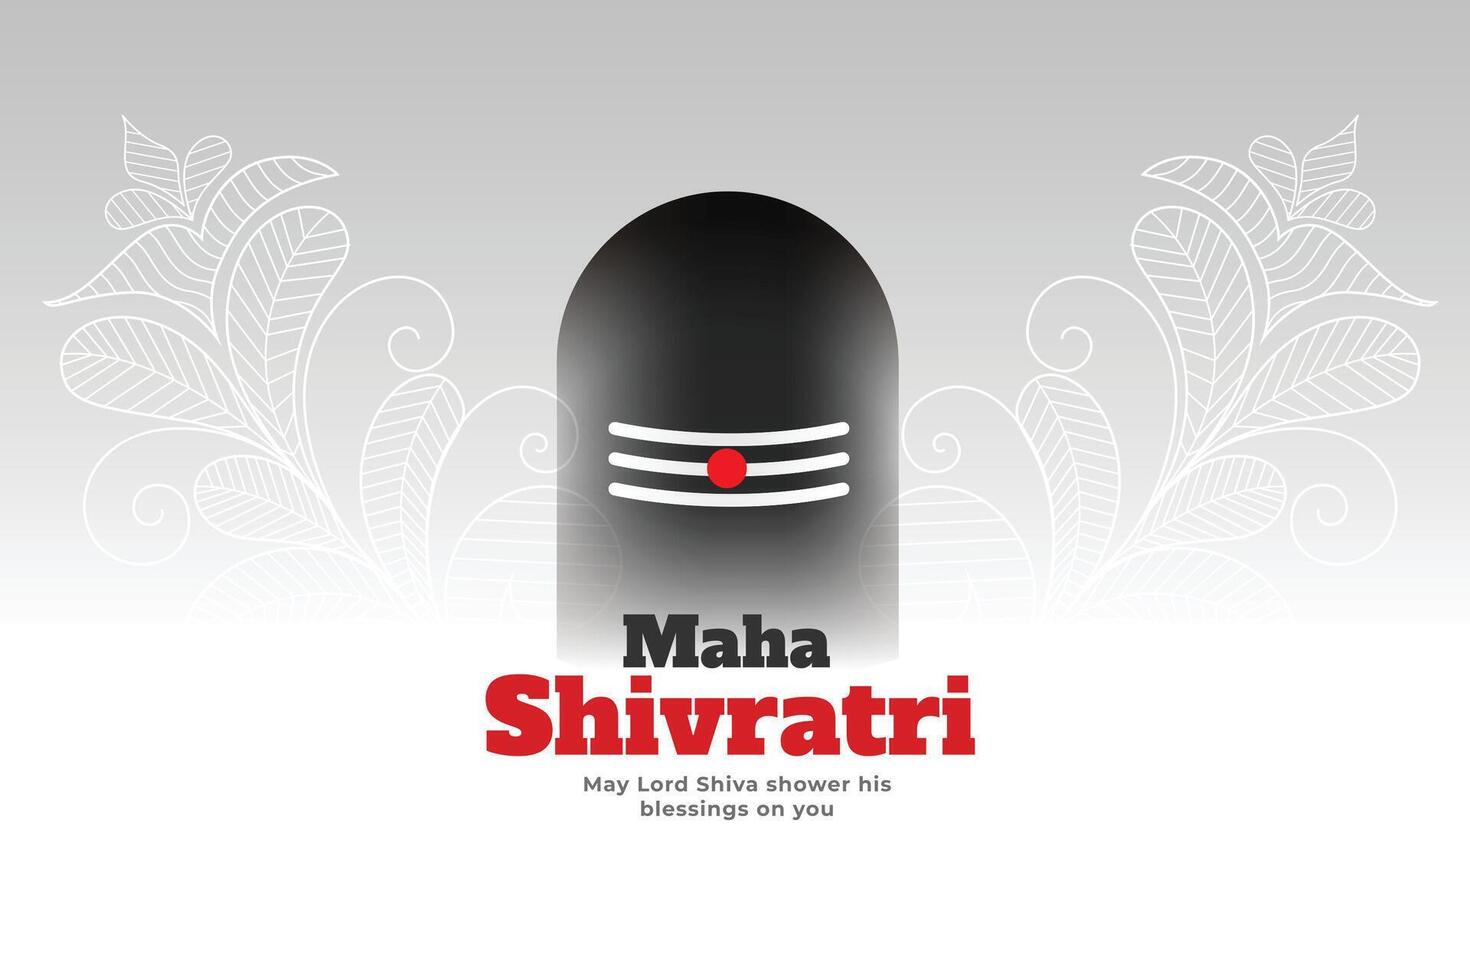 Herr Shiva zittern Design zum maha Shivratri Festival vektor